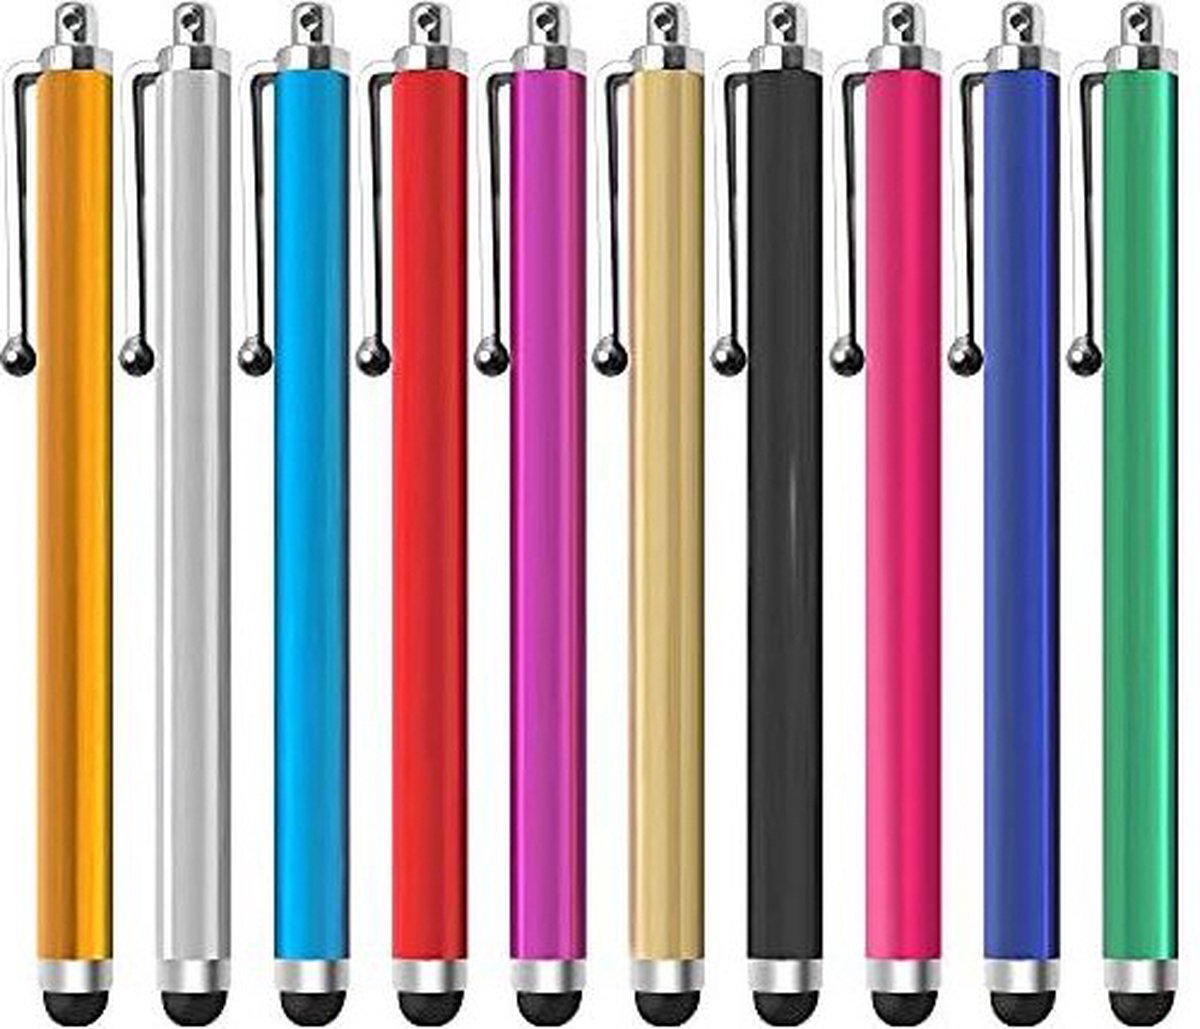 Stylus Pen I Capacitieve Stylus Pen I Universeler Stylus I Geschikt Voor Alle Smartphones En Tablets I 1 Stuk I Roze